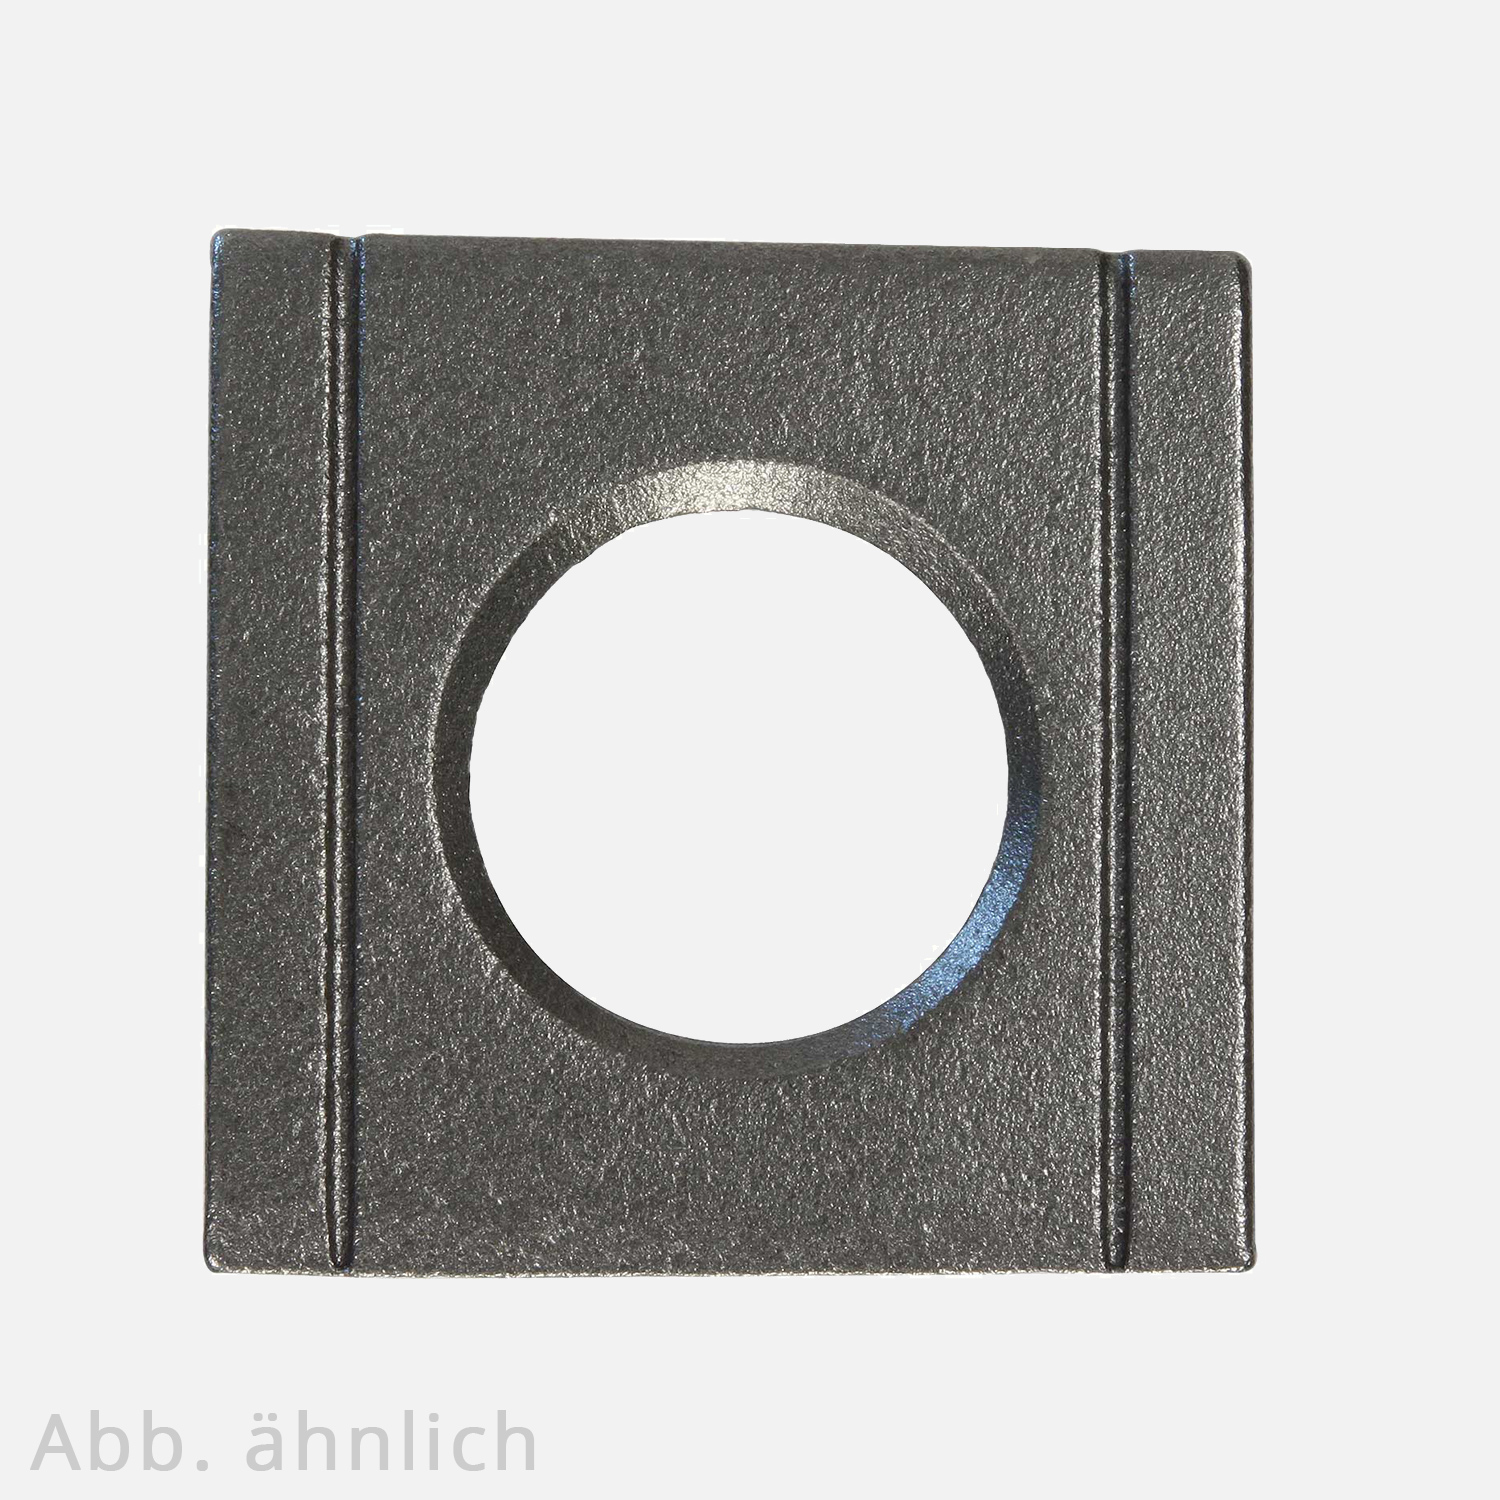 1 Vierkantscheibe - keilförmig 8% - 23 mm - DIN 6918 - Stahl vergütet